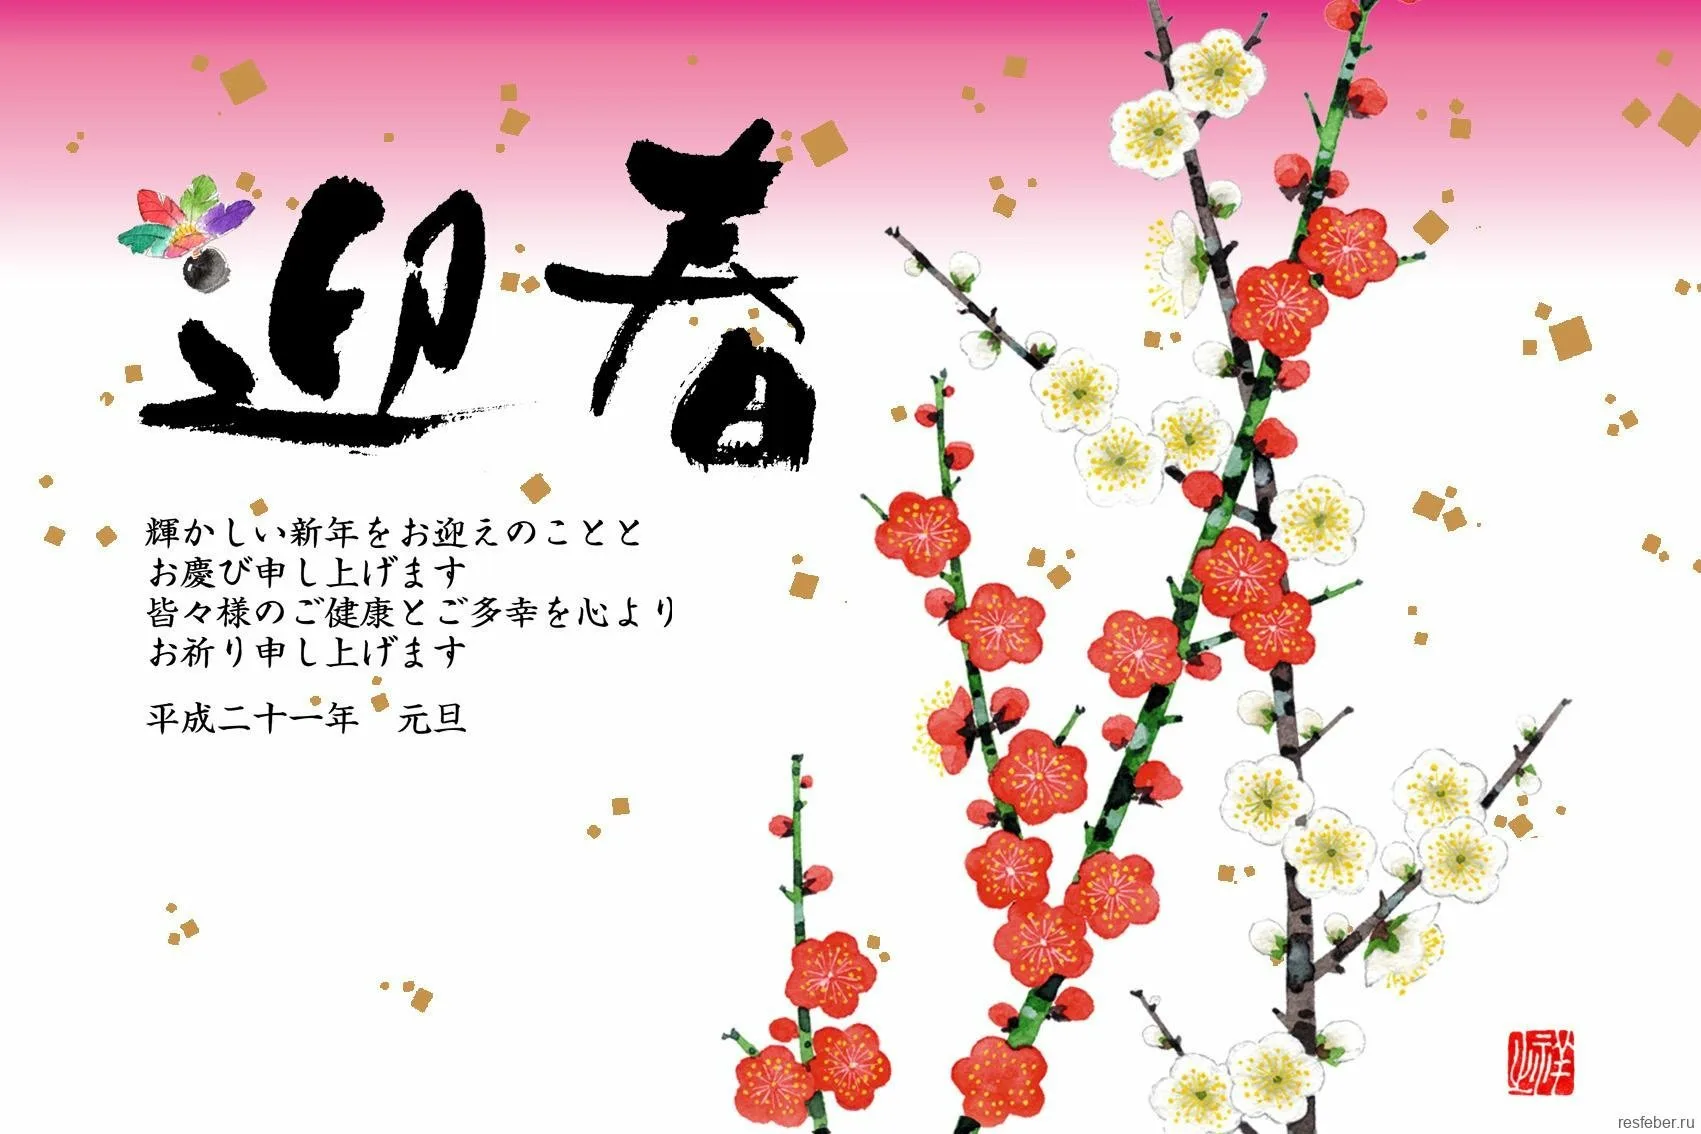 День на японском языке. Японские новогодние открытки нэнгадзё. День рождения в японском стиле. Поздравление с днем рождения в японском стиле. Пожелания в японском стиле.